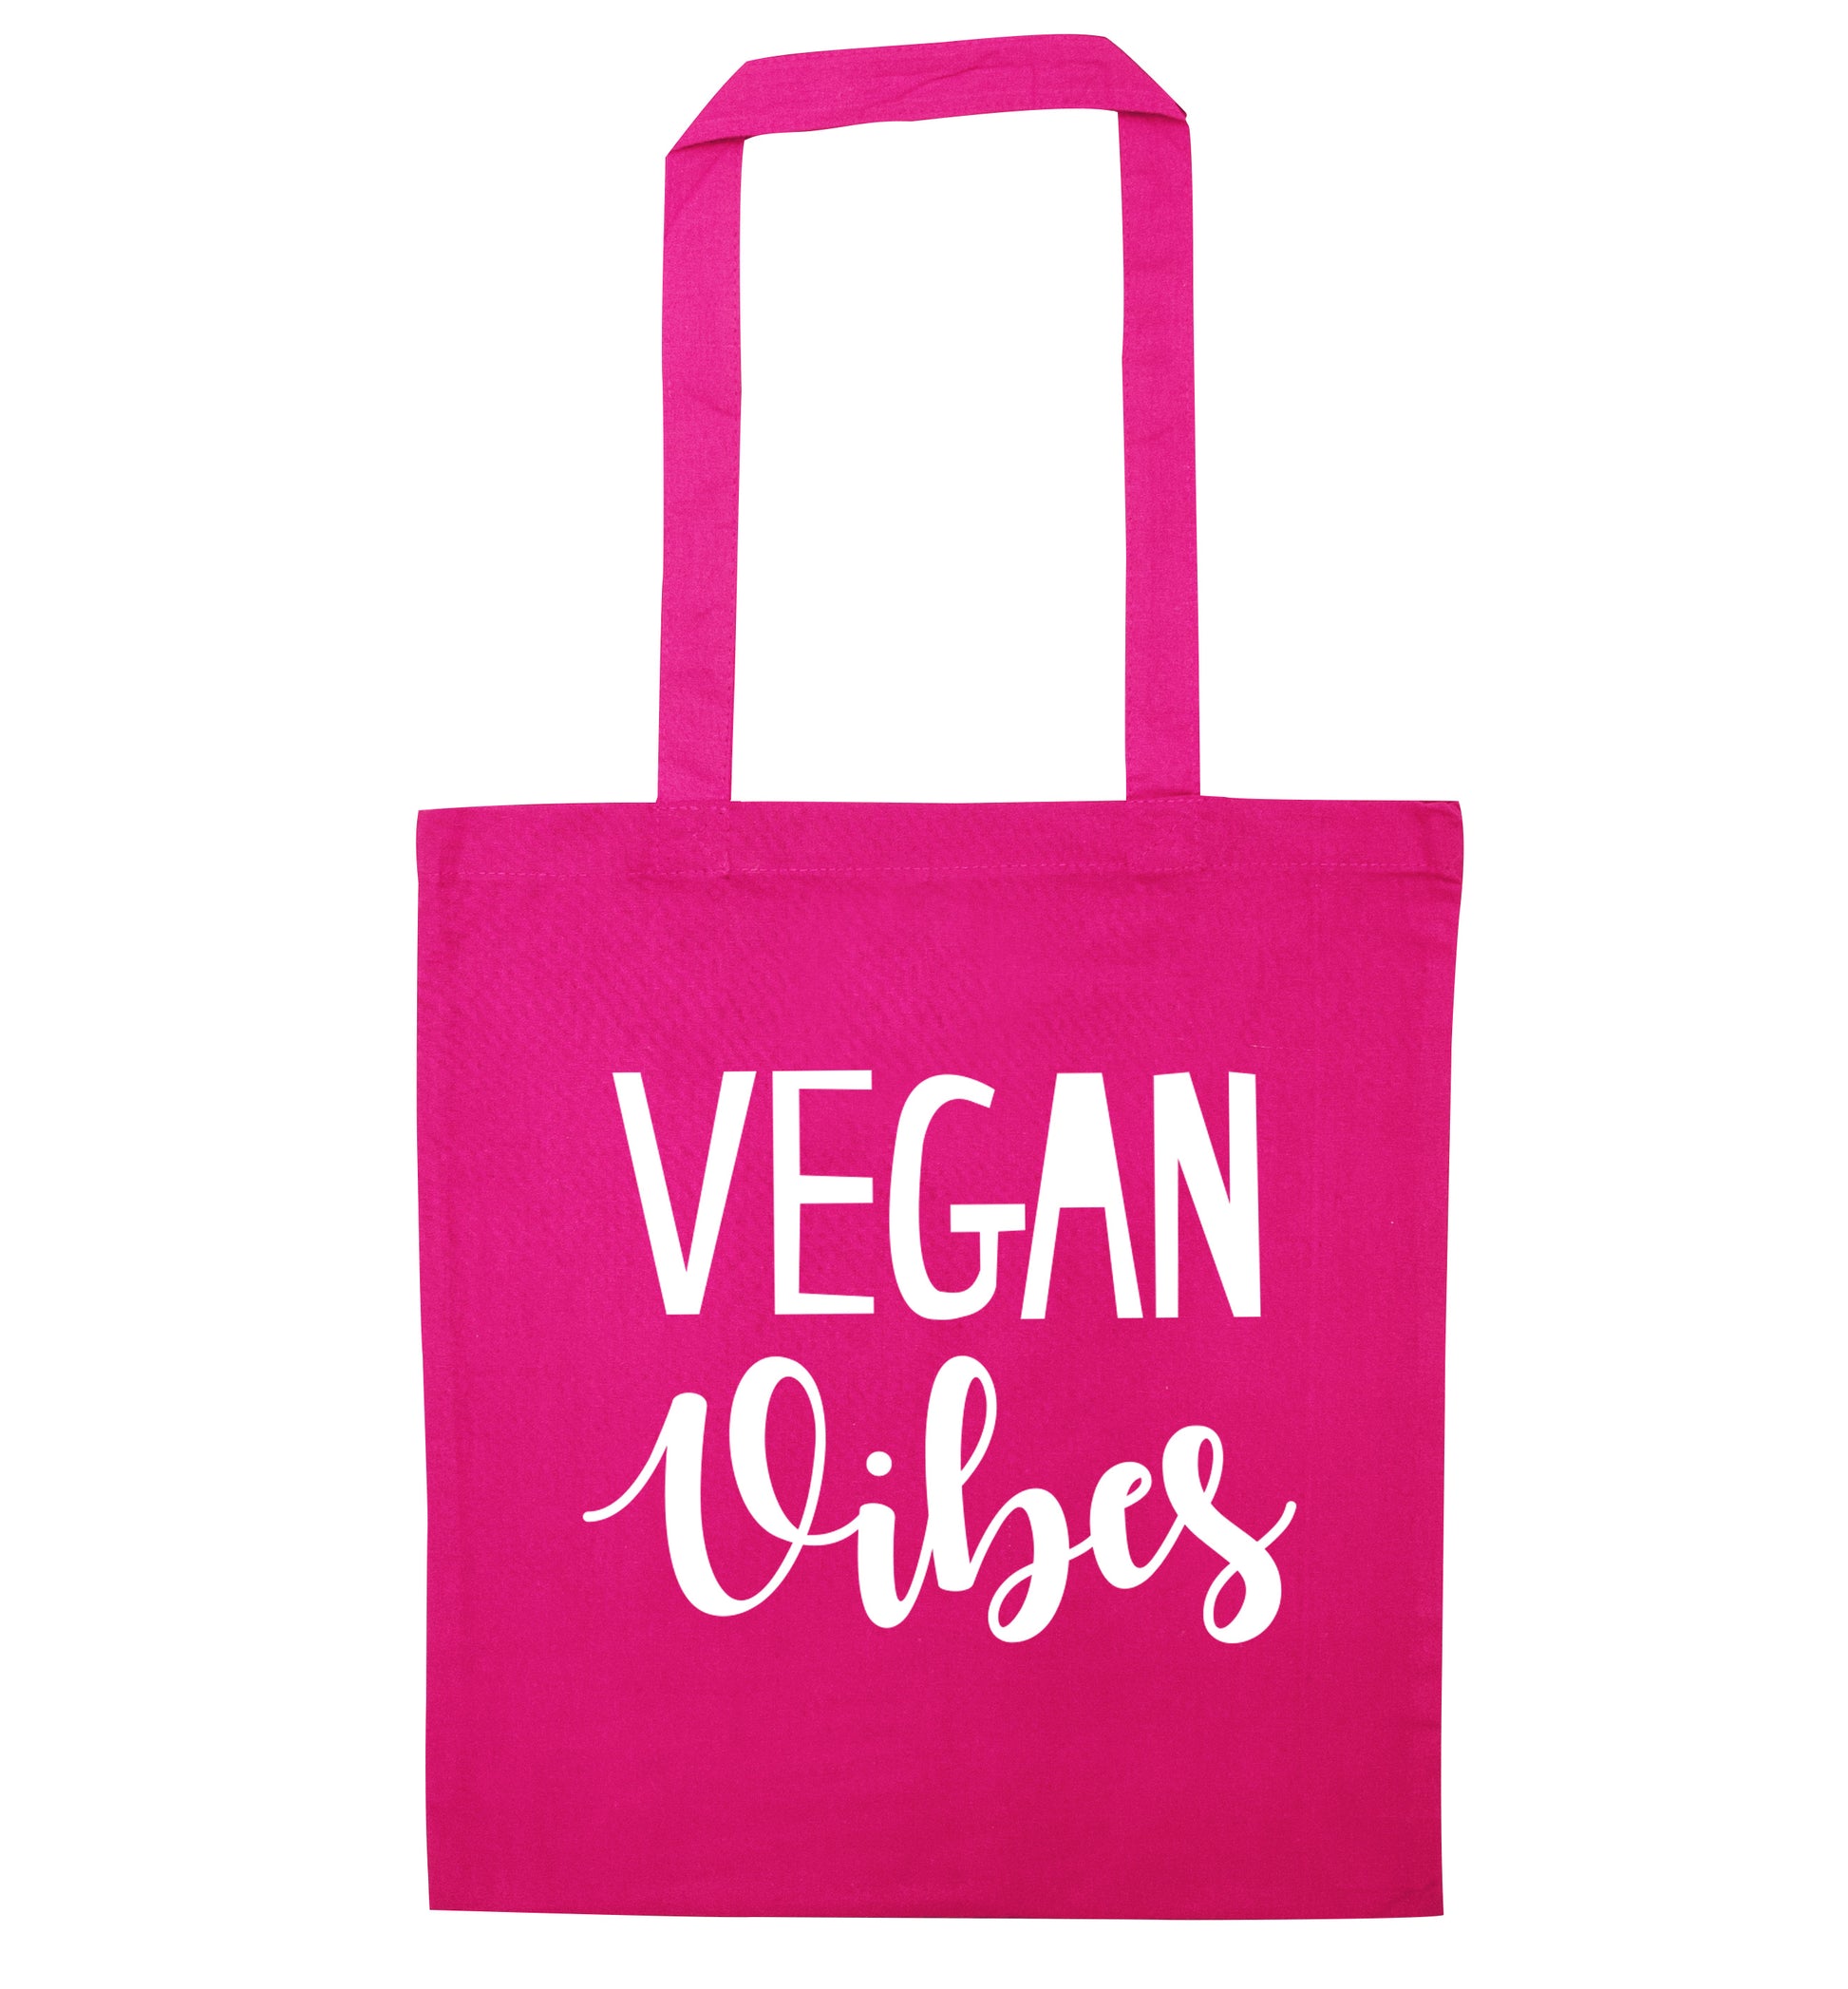 Vegan Vibes pink tote bag